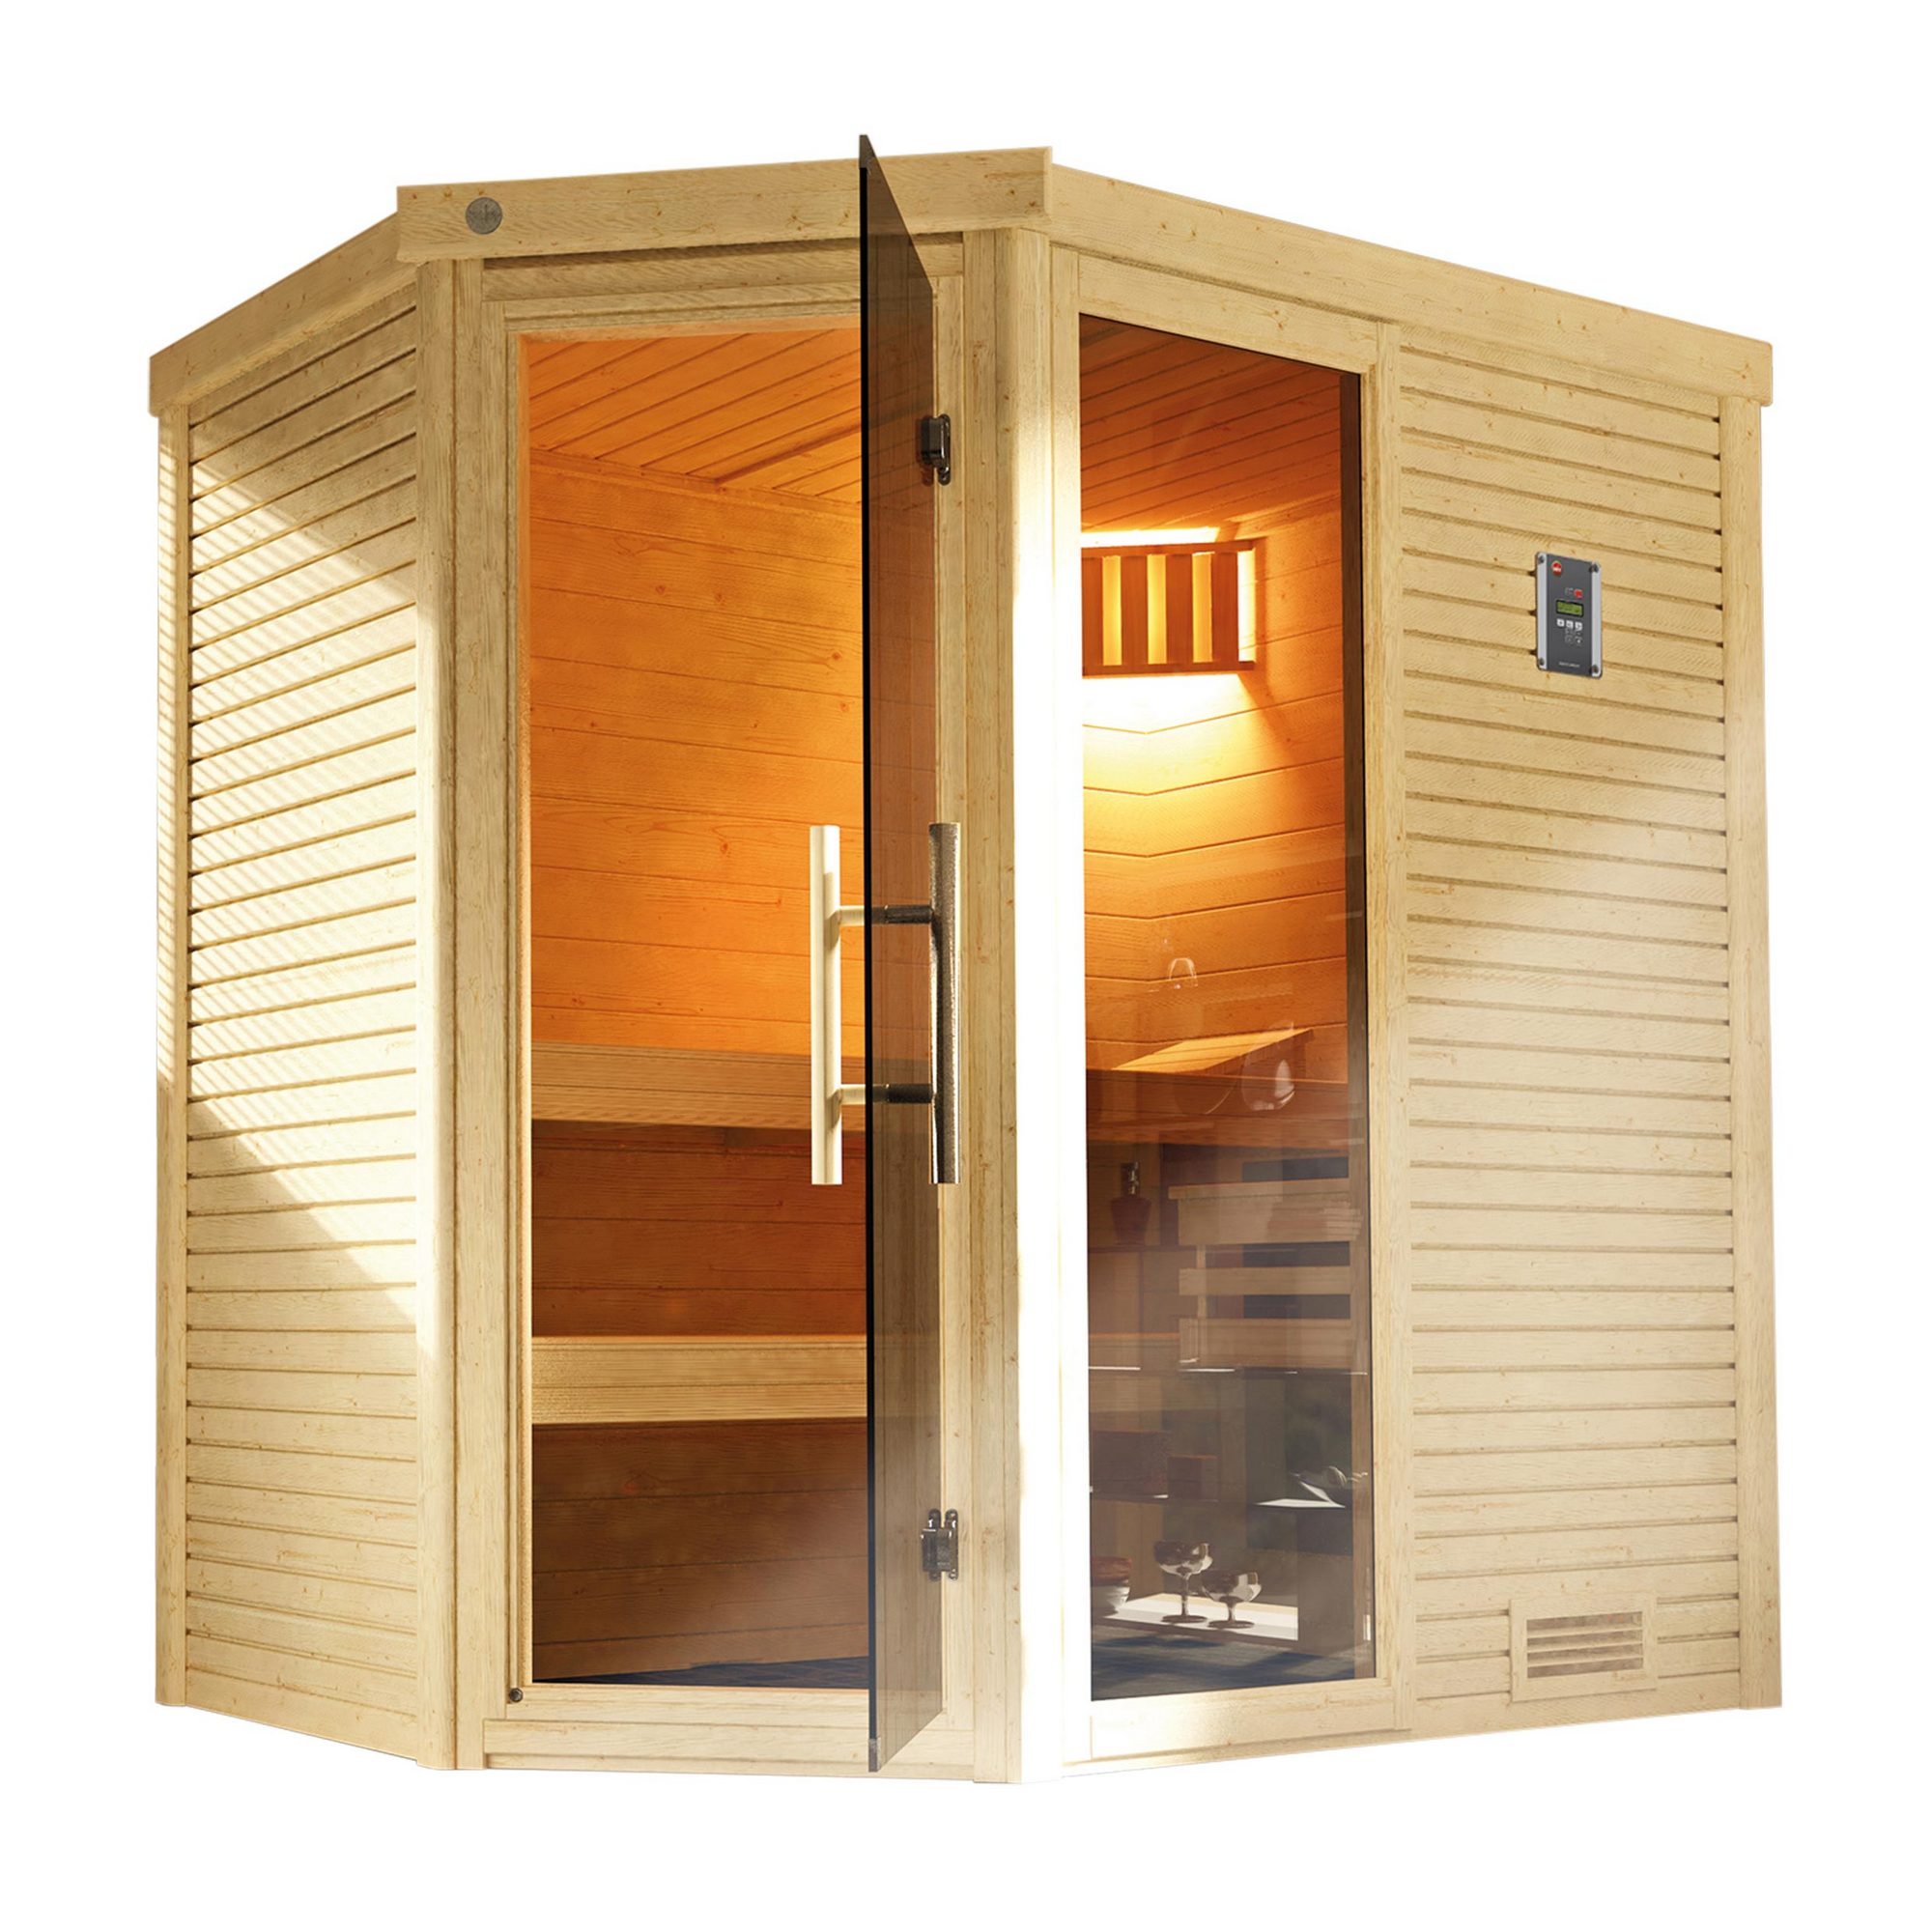 Design-Sauna 'Cubilis 1' mit 7,5 kW BioS-Ofenset, Steuerung, Glastür, Fenster 198 x 148 x 205 cm + product picture